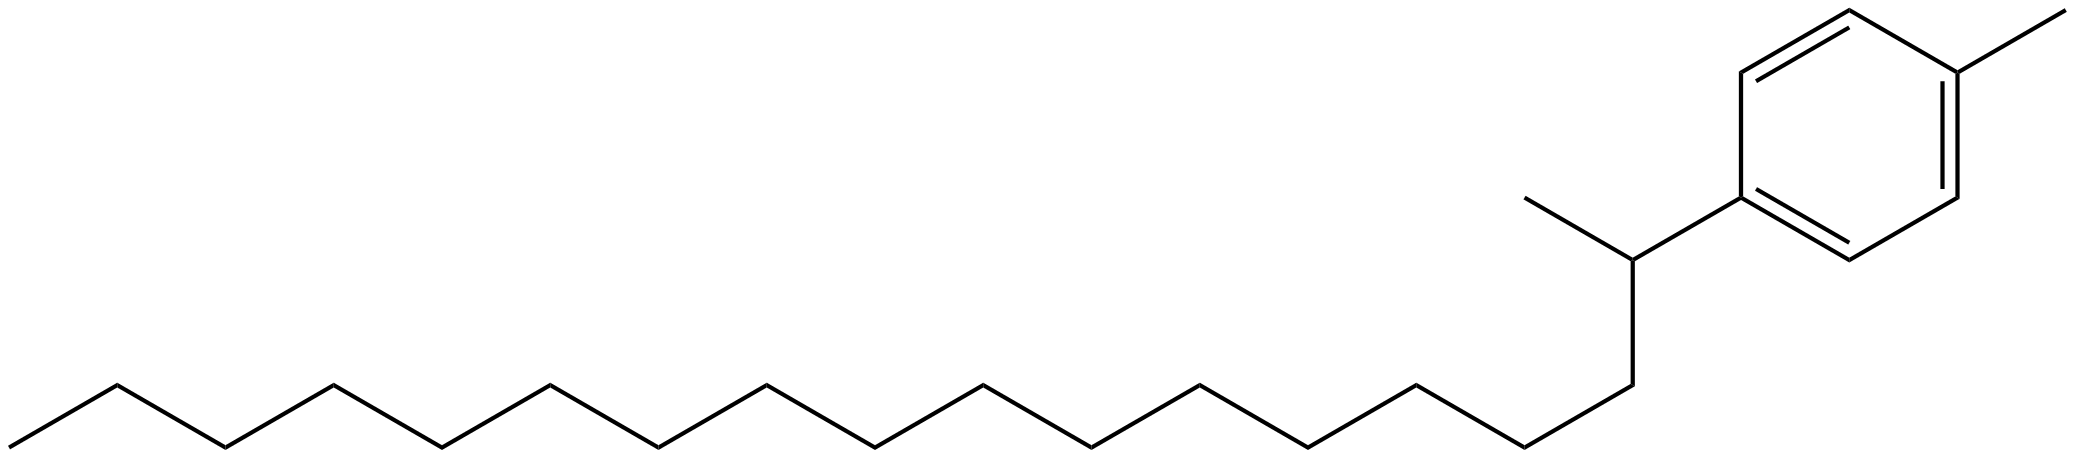 Image of 1-methyl-4-(1-methylheptadecyl)benzene